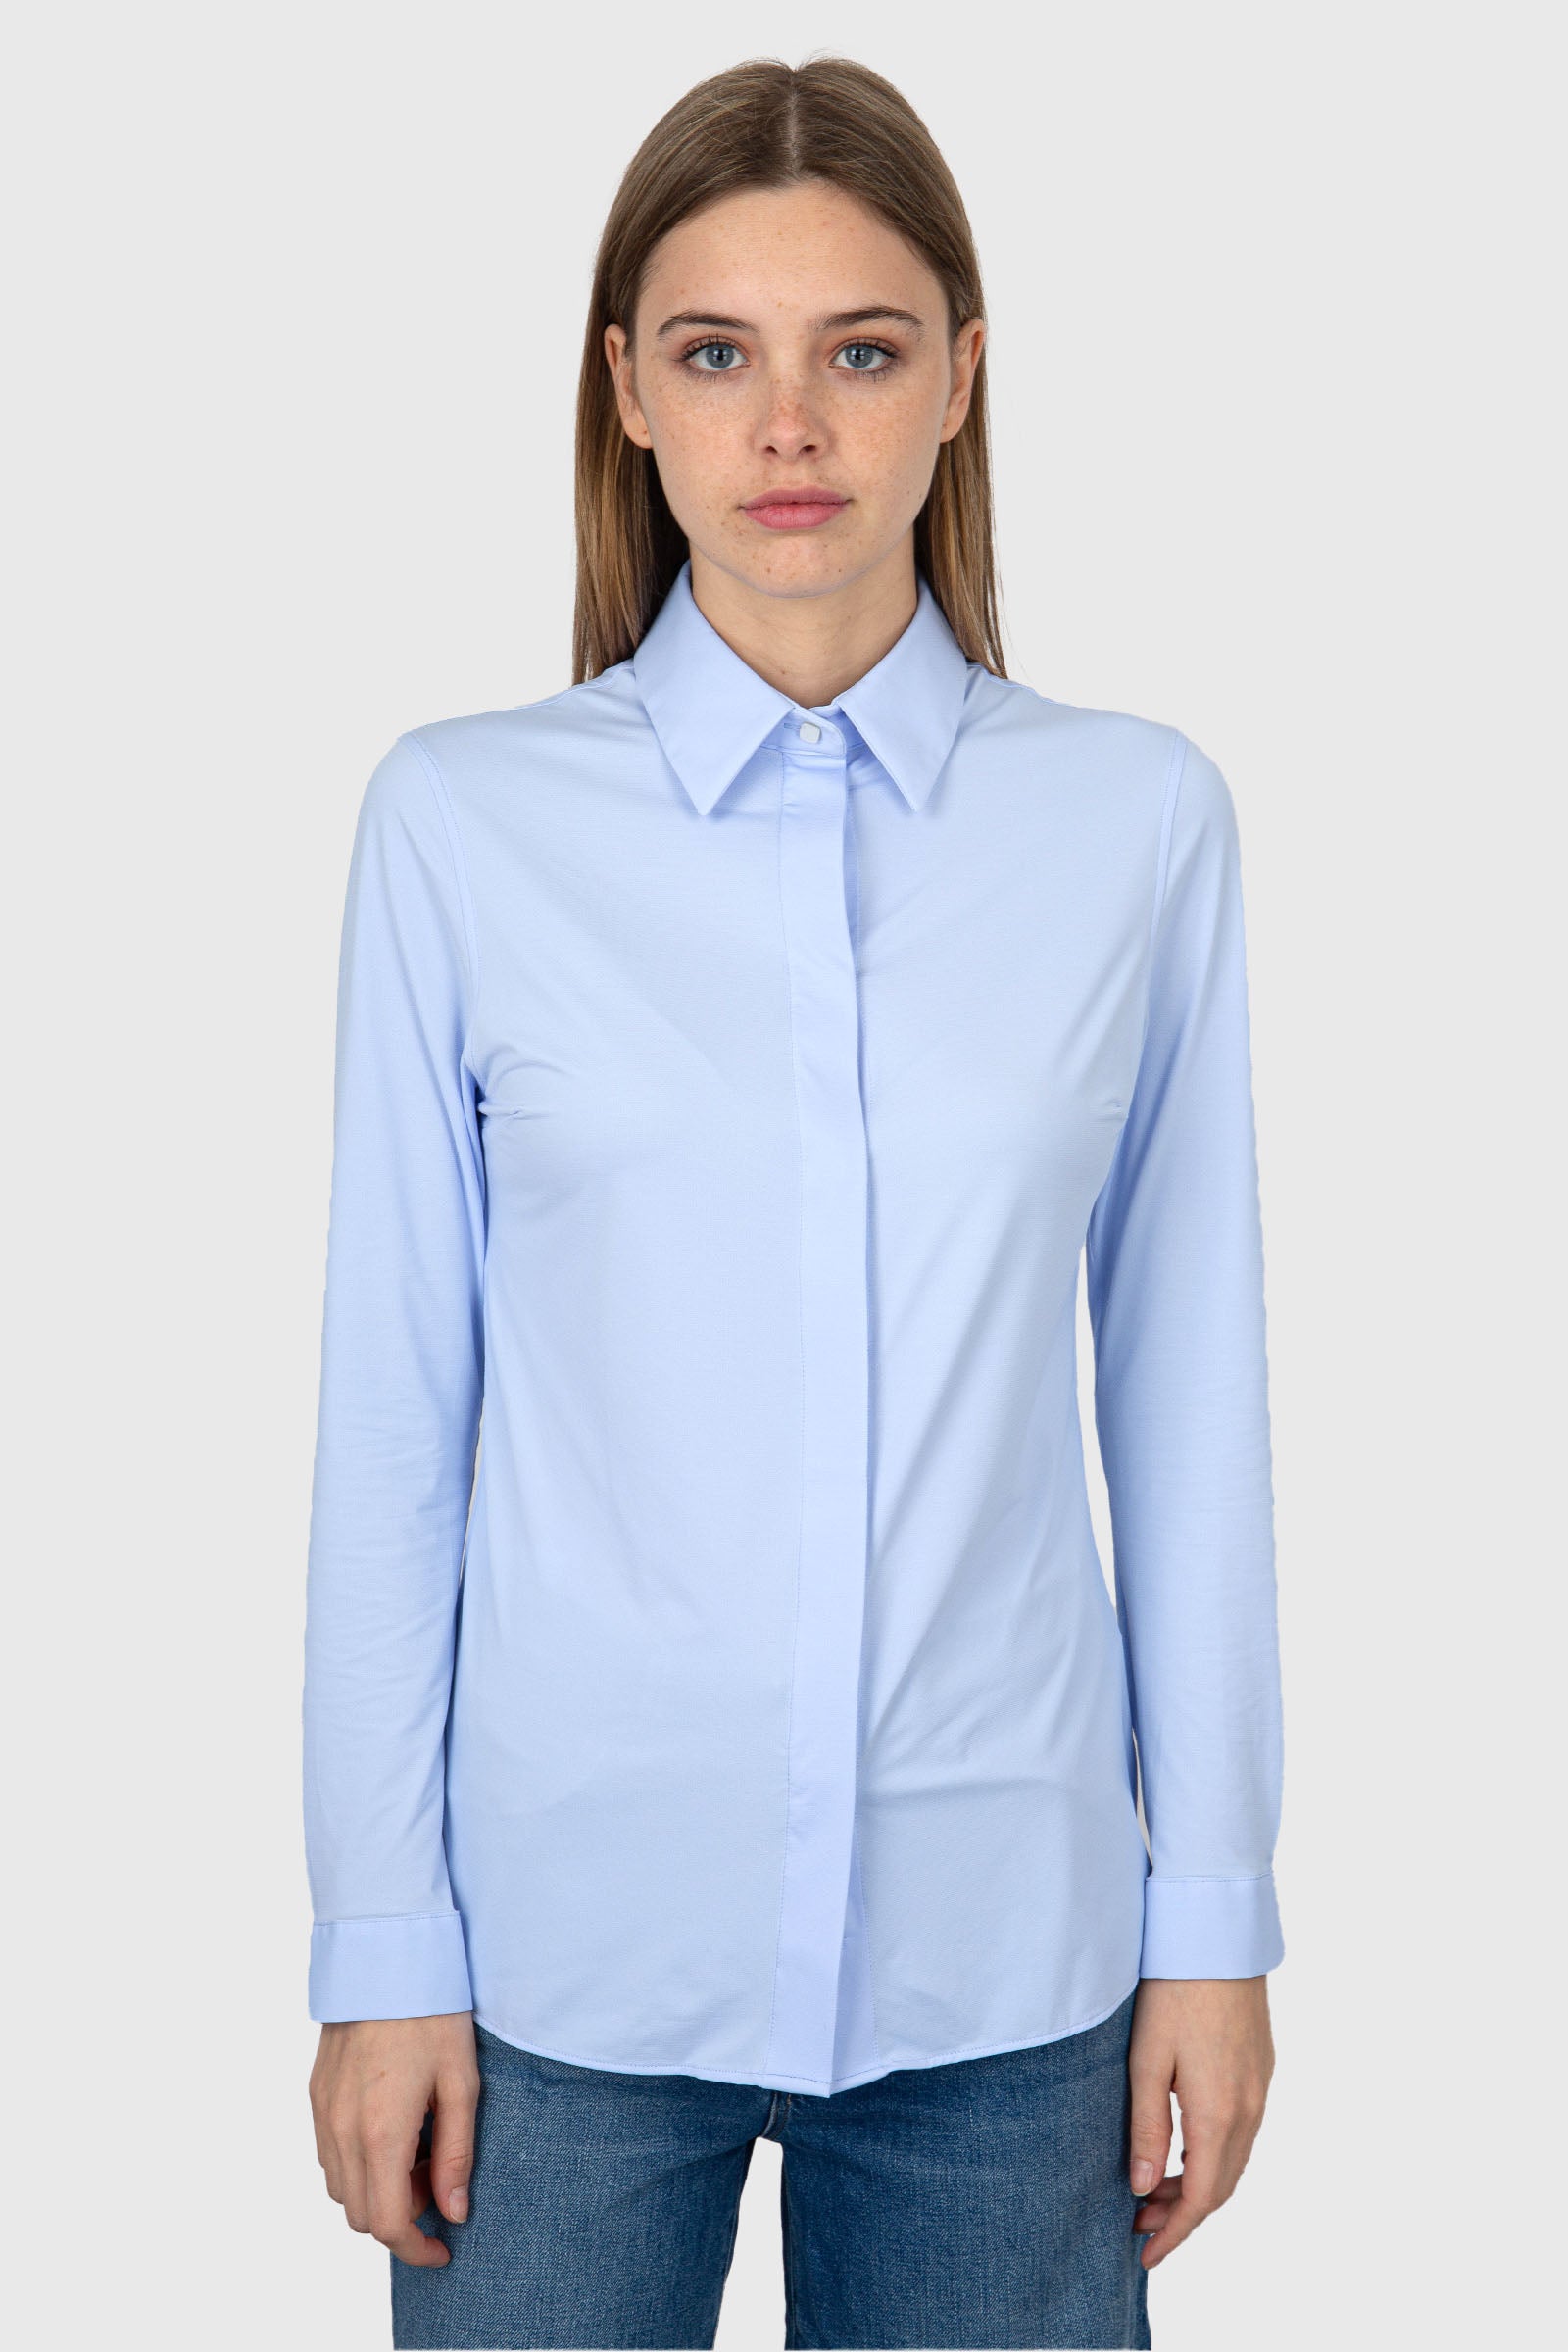 RRD Camicia Oxford Plain Wom Shirt  Celeste - 5